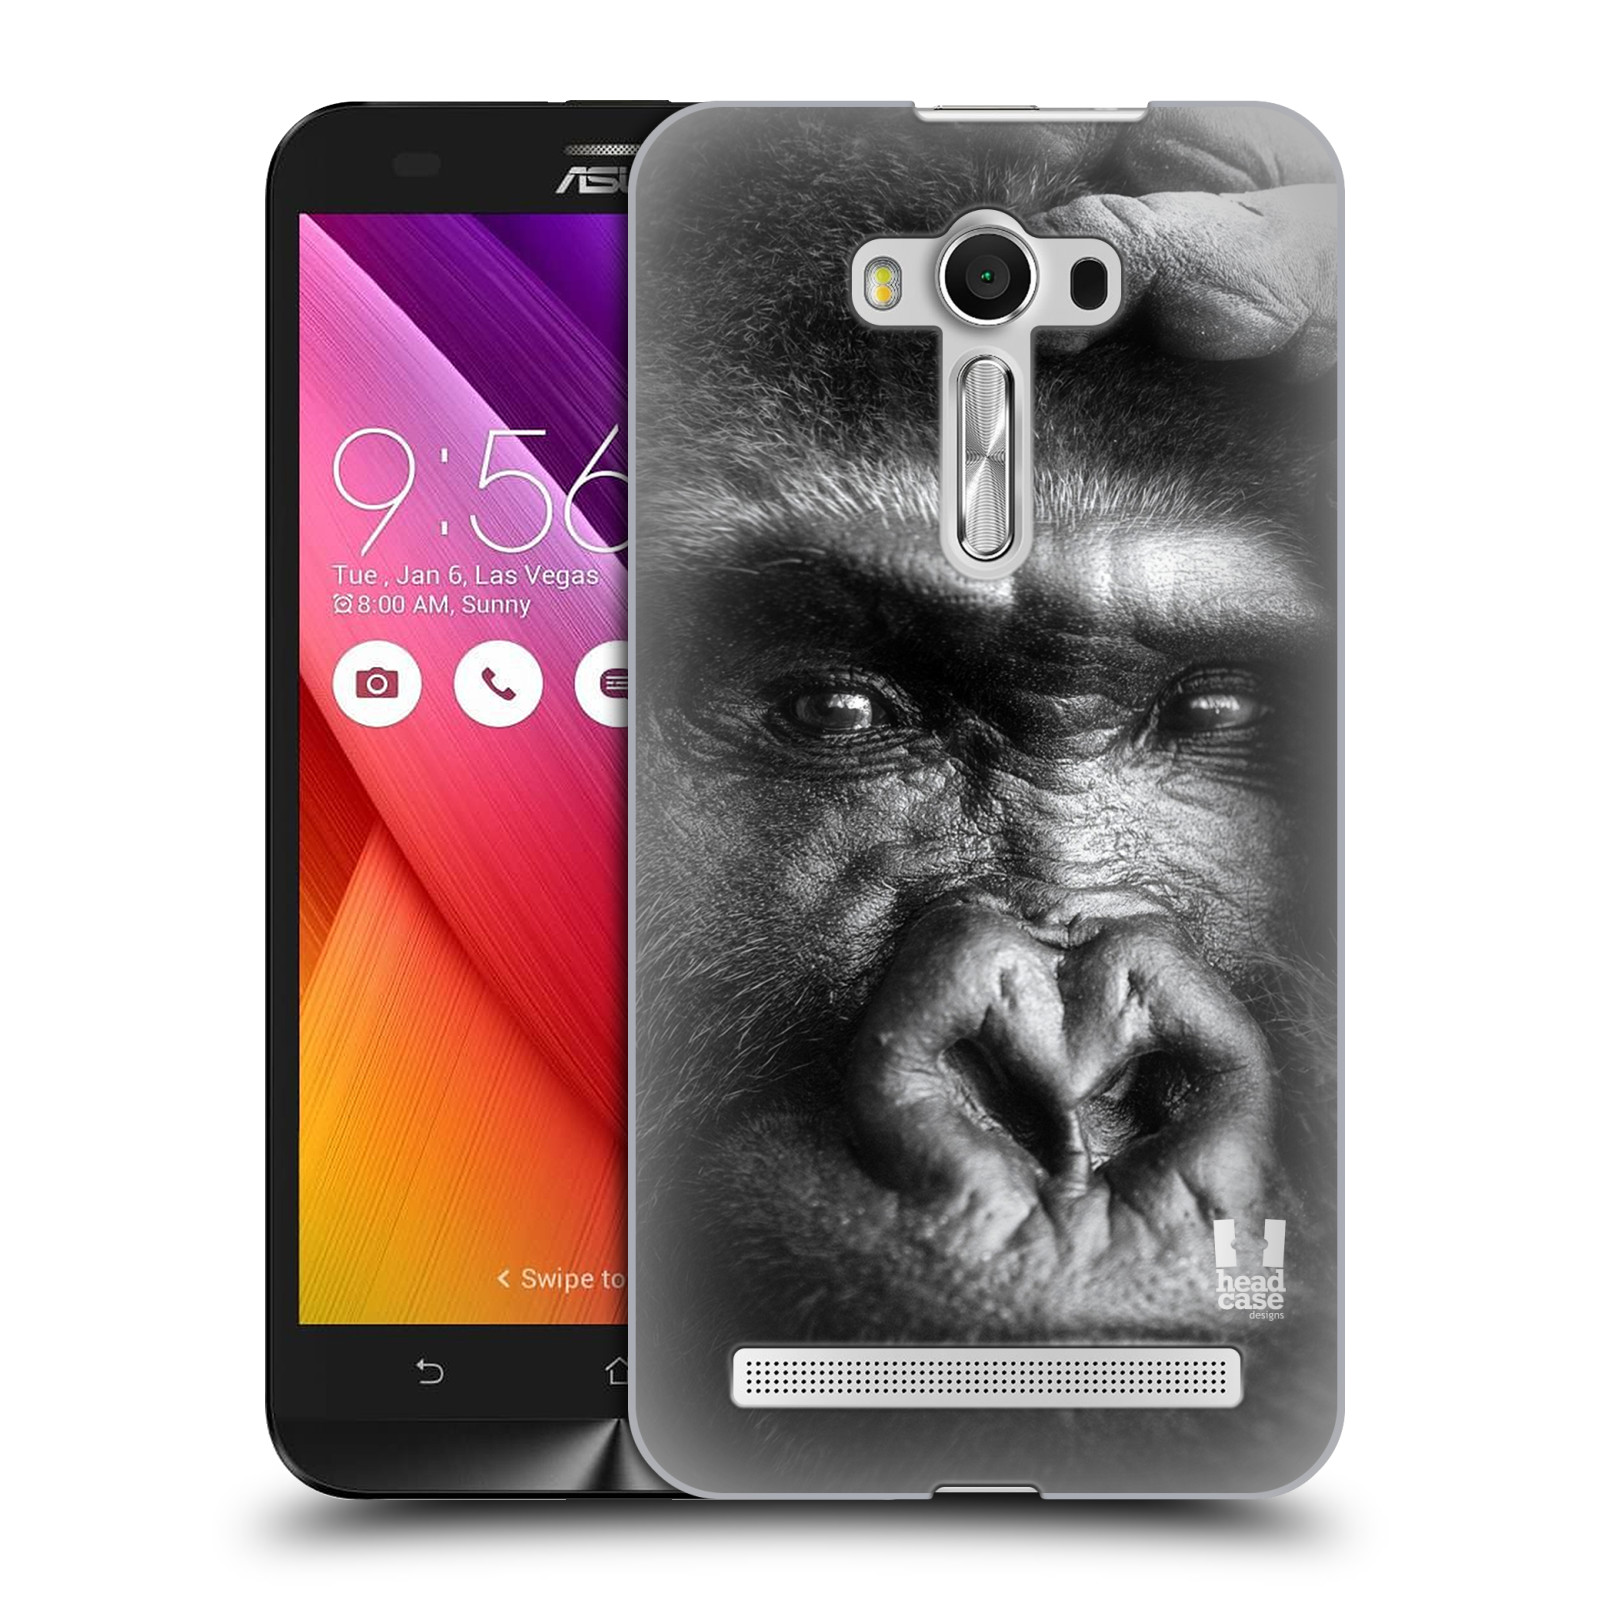 HEAD CASE plastový obal na mobil Asus Zenfone 2 LASER (5,5 displej ZE550KL) vzor Divočina, Divoký život a zvířata foto GORILA TVÁŘ